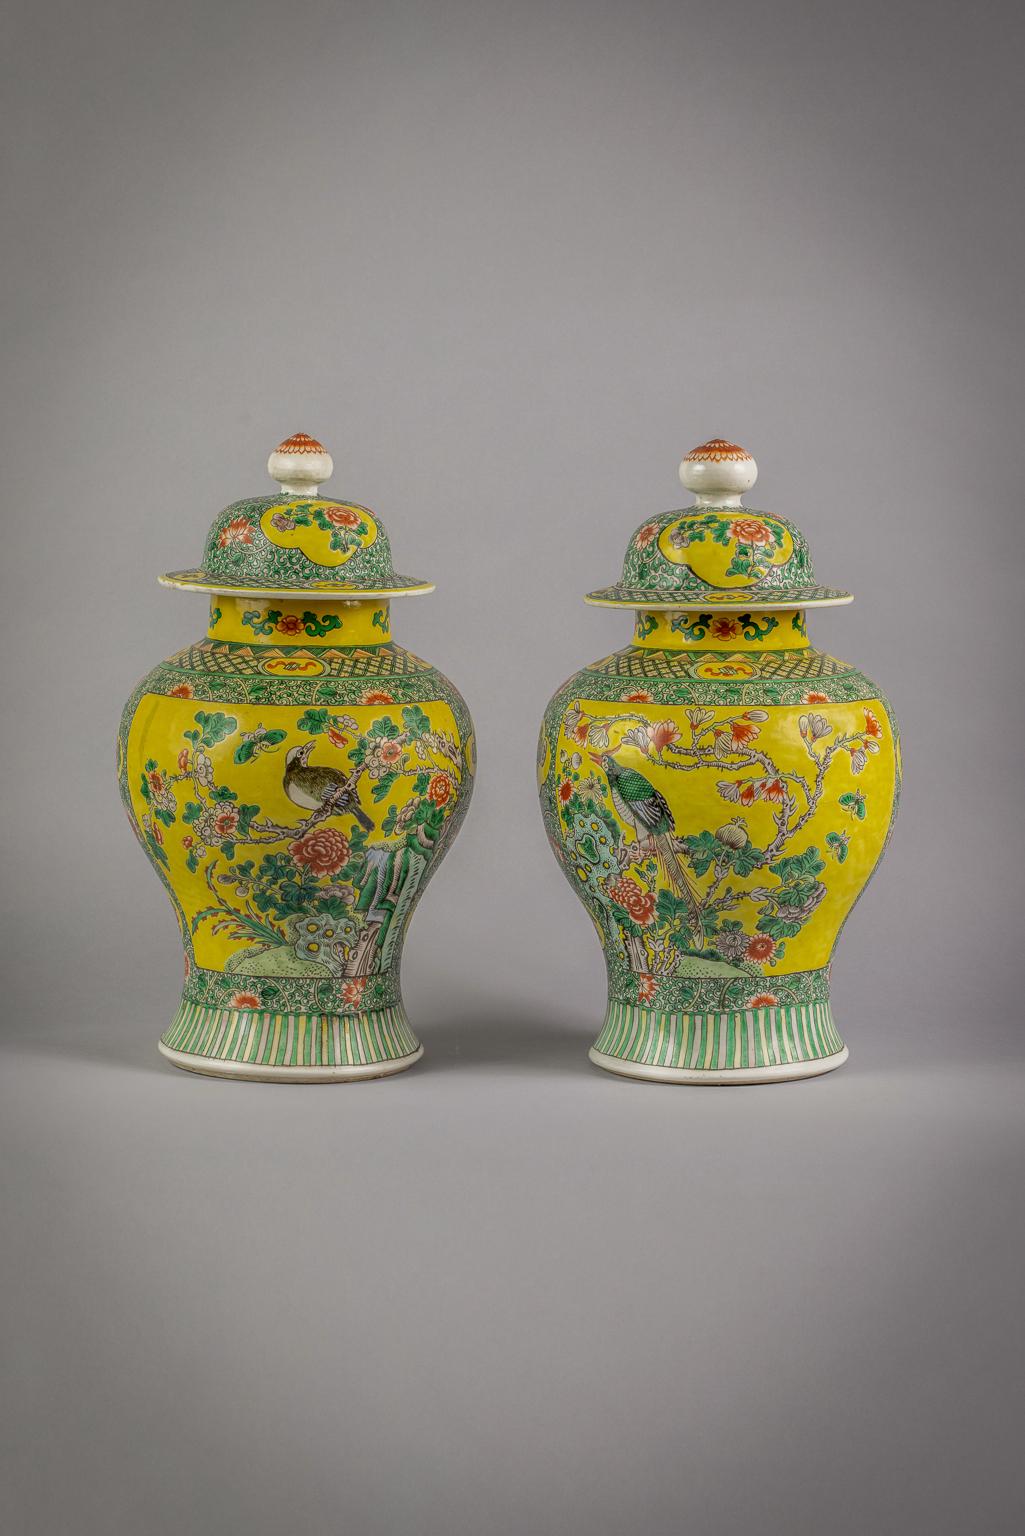 Pair of Japanese famille verte covered vases, circa 1860.